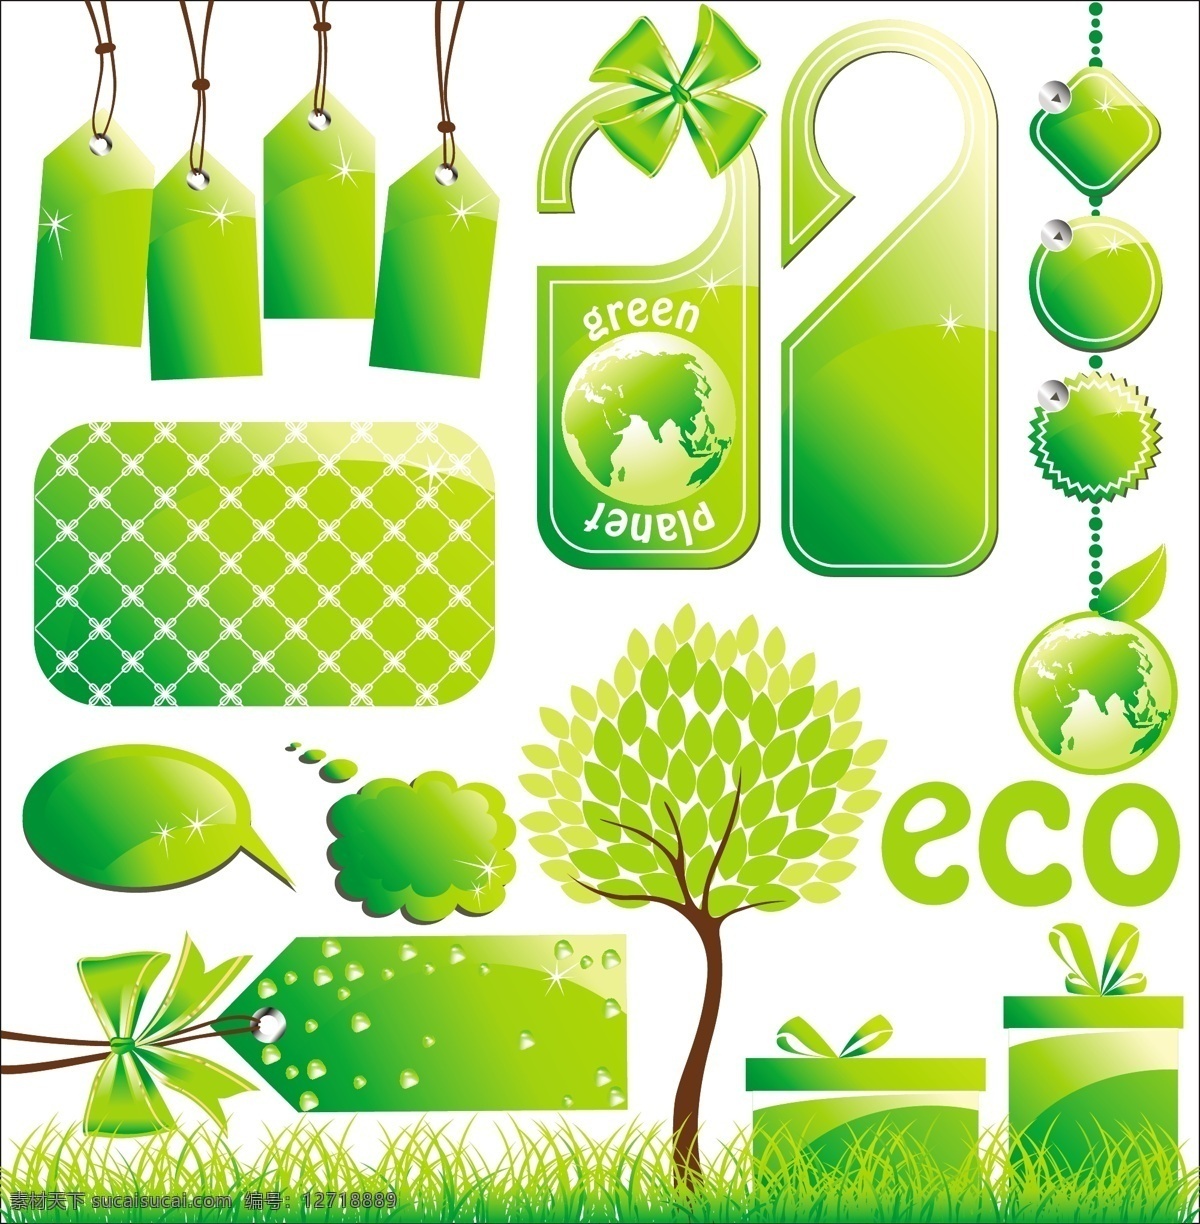 低 碳 环保 主题 图标 低碳 绿色 吊牌 挂牌 vip卡 背景 对话泡泡 对话框 树木 小草 蝴蝶结 礼盒 礼物 按钮图标 白色